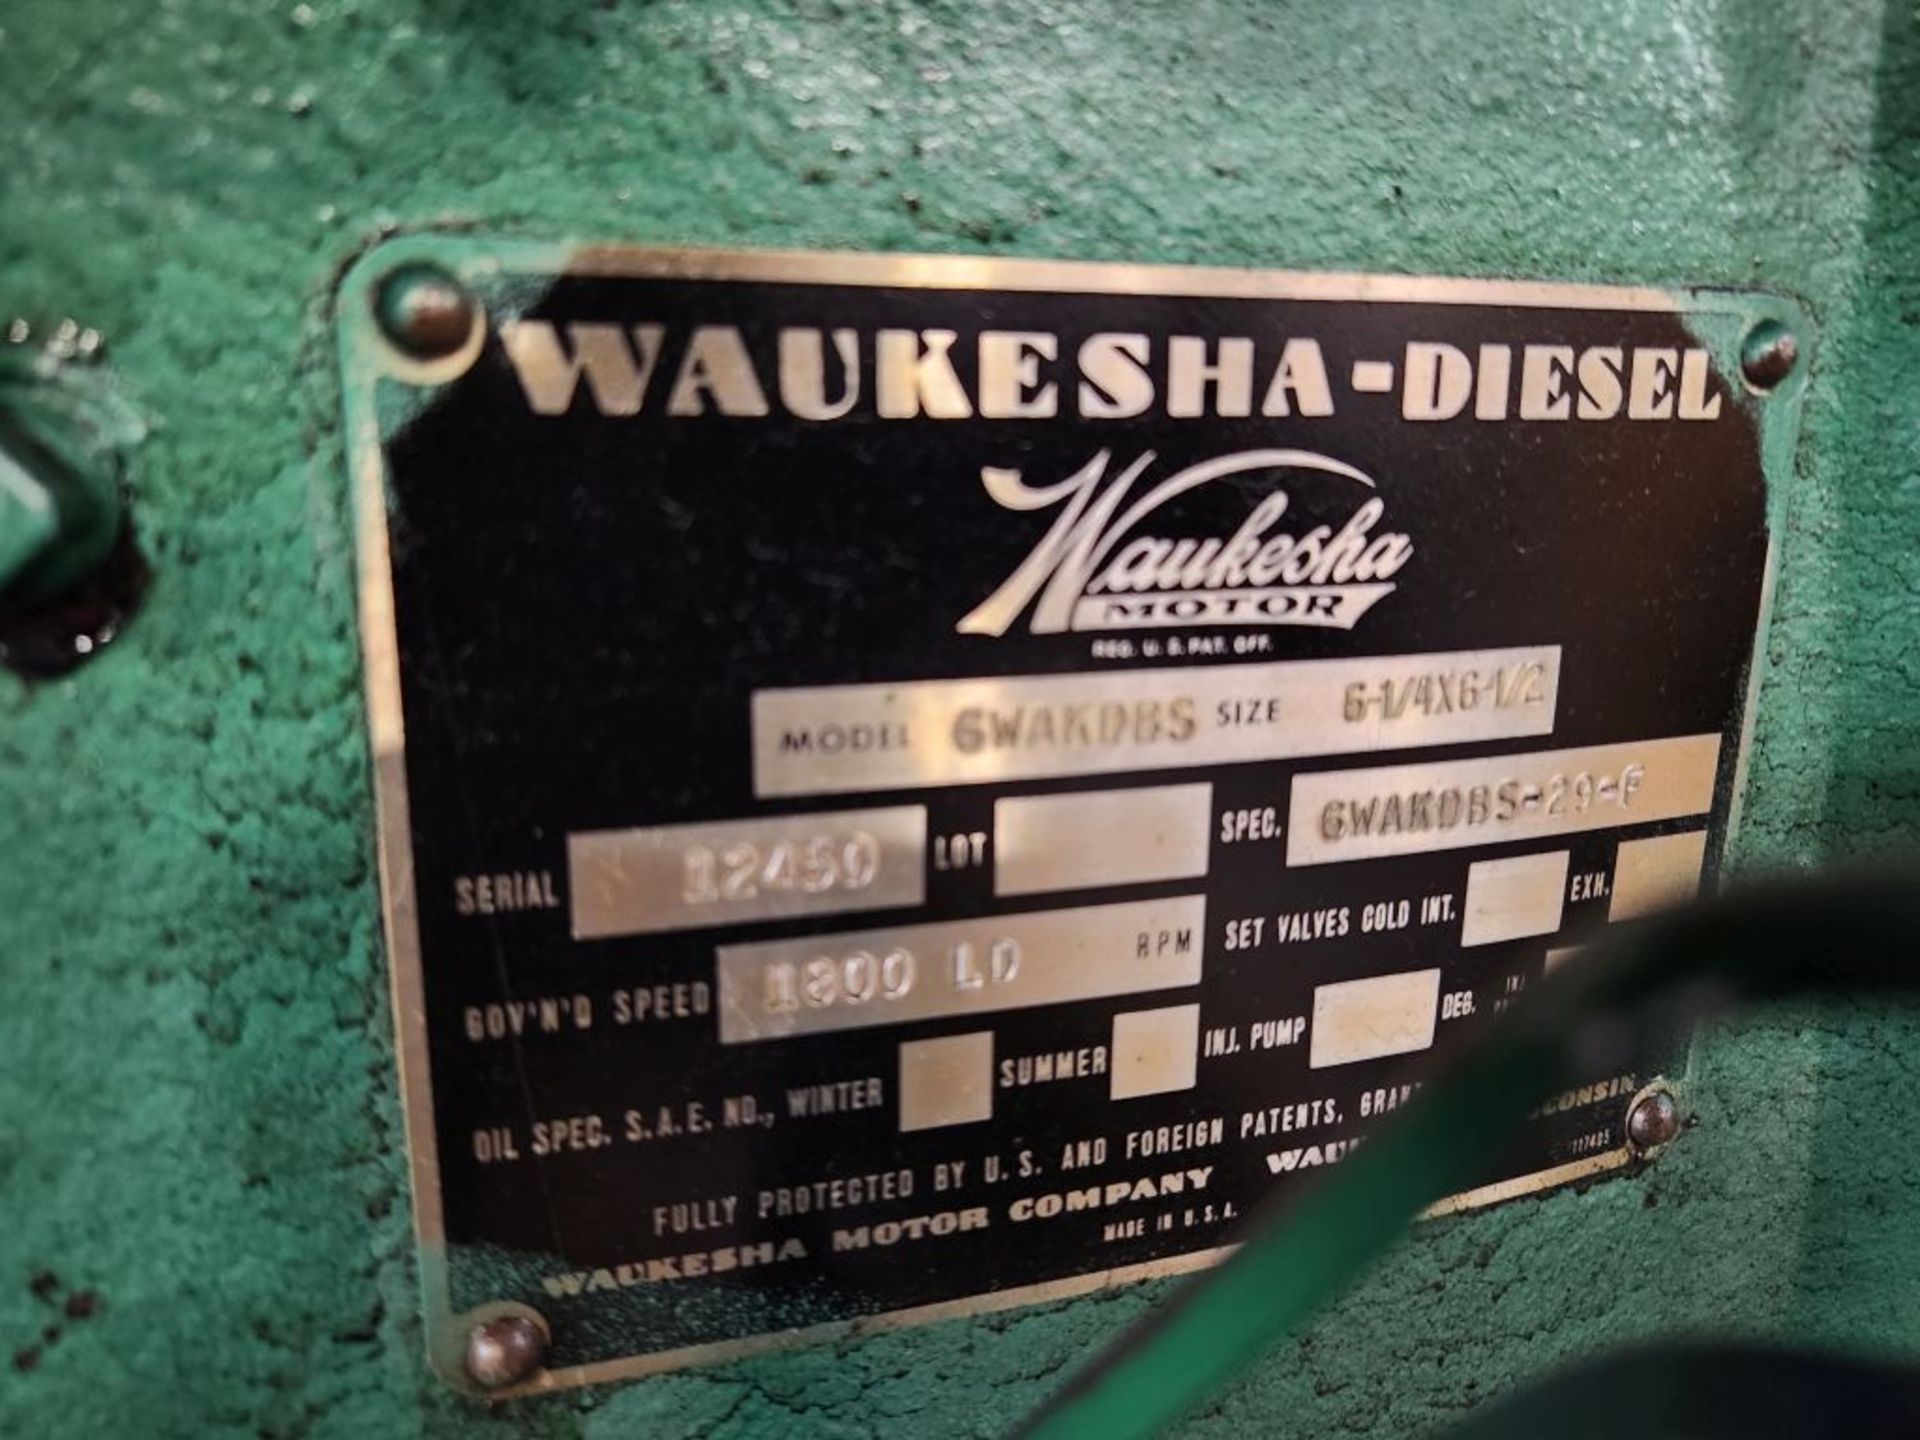 Minneapolis, MN - ONAN 200 KW Diesel Generator with Waukesha Diesel Engine - Image 14 of 21